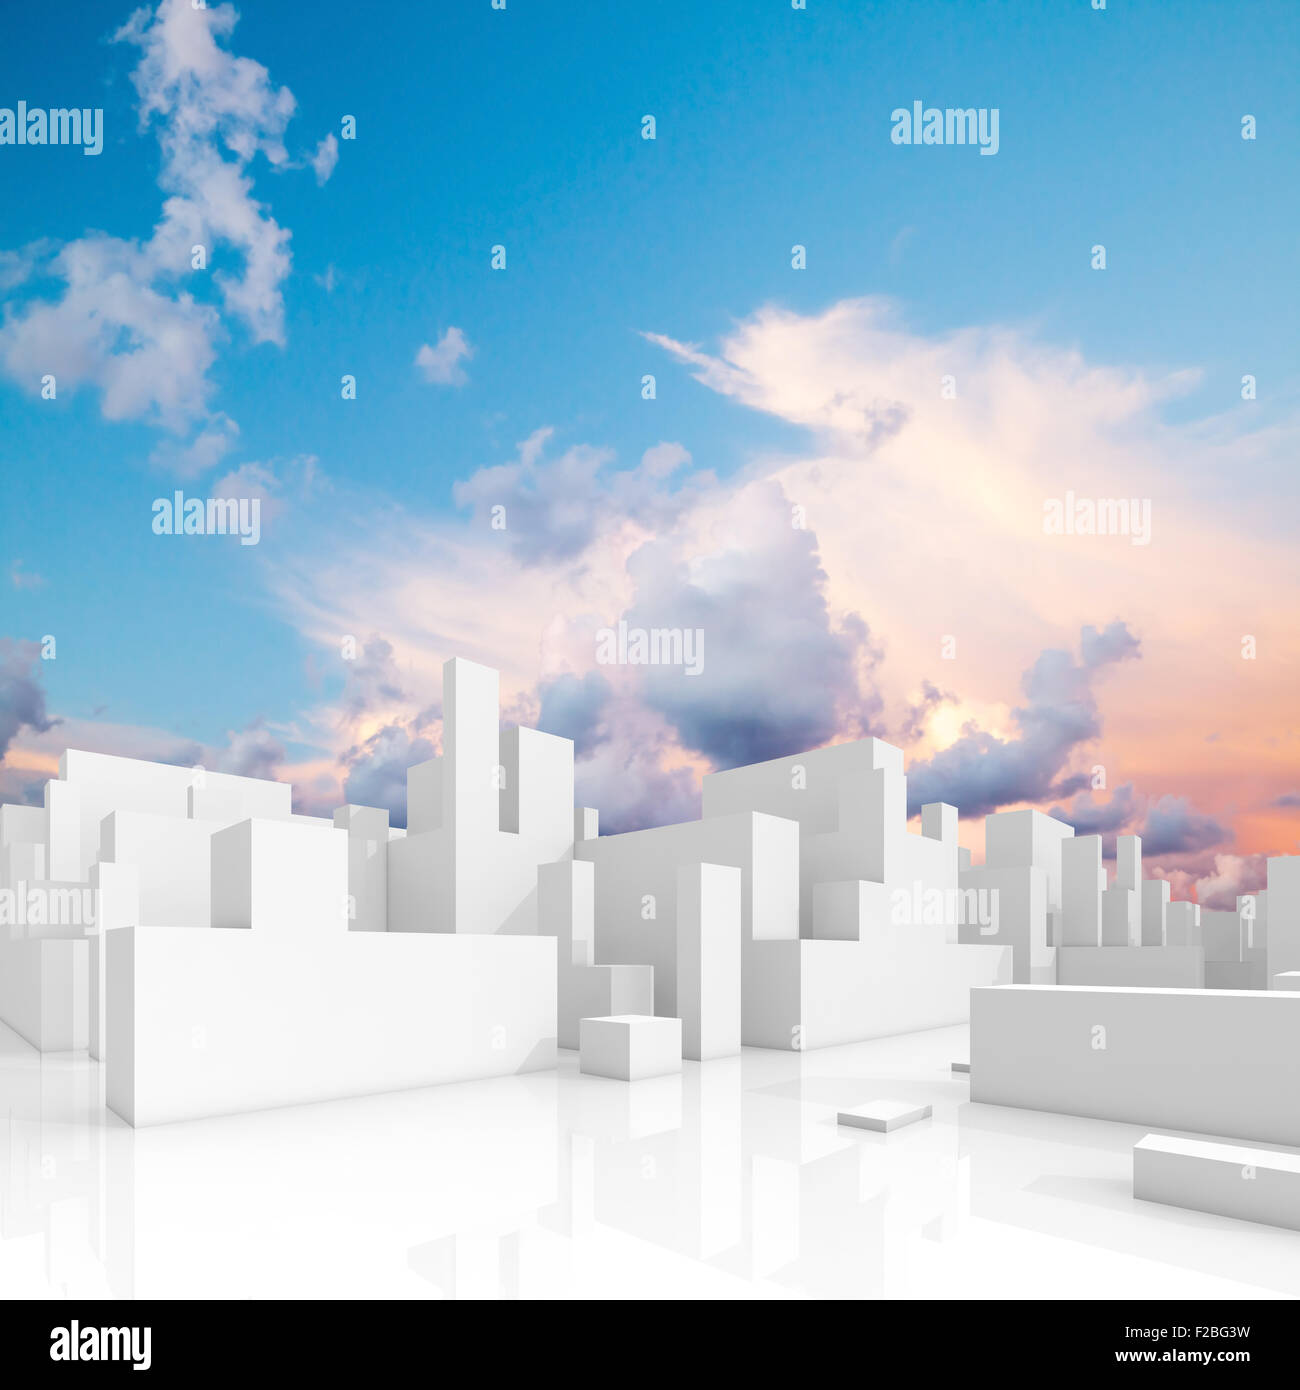 Abstrakt weiß schematische 3d Stadtansicht, quadratische Zusammensetzung mit natürlichen hellen bewölkten Himmel auf einem Hintergrund Stockfoto